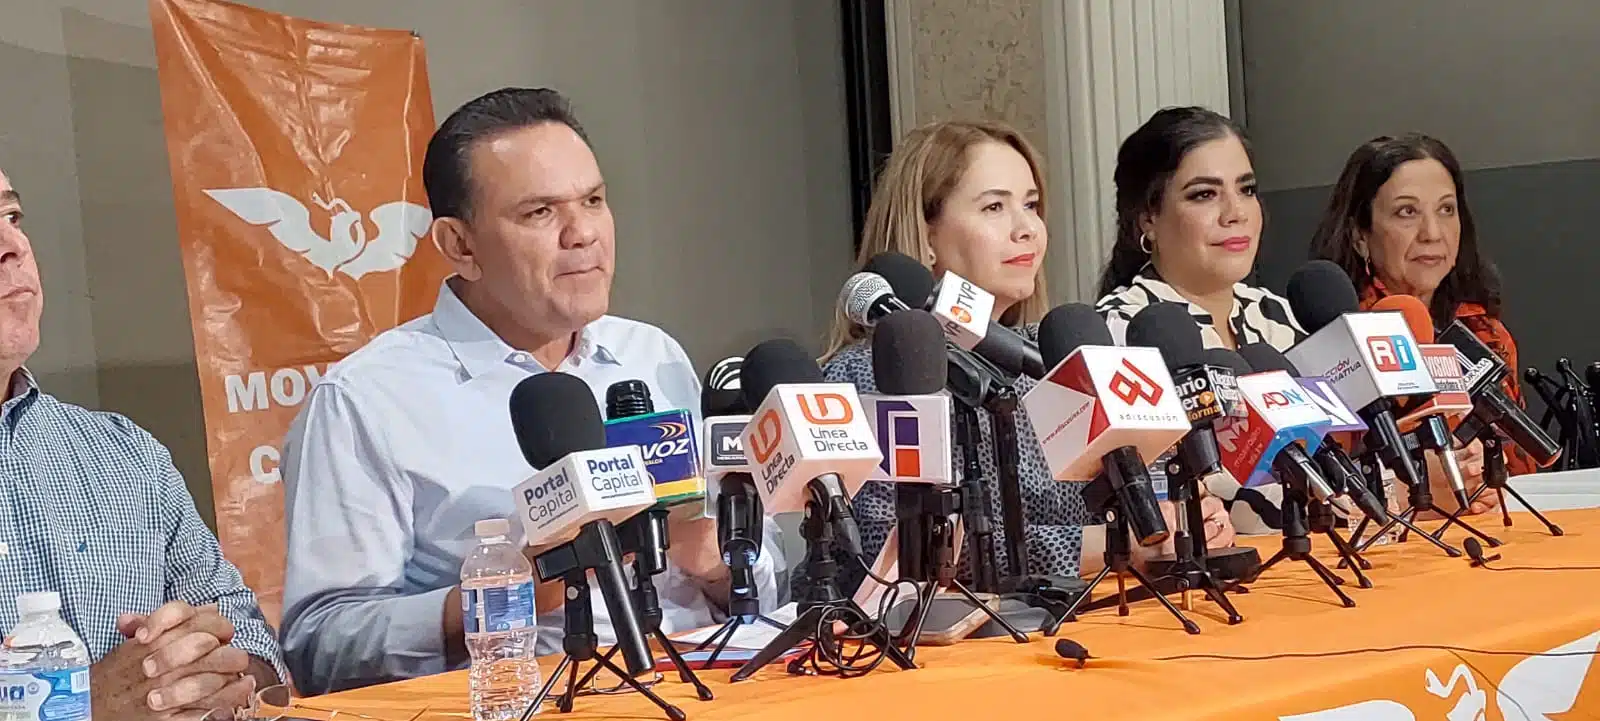 Sergio Torres Félix junto a otros representantes de Movimiento Ciudadano